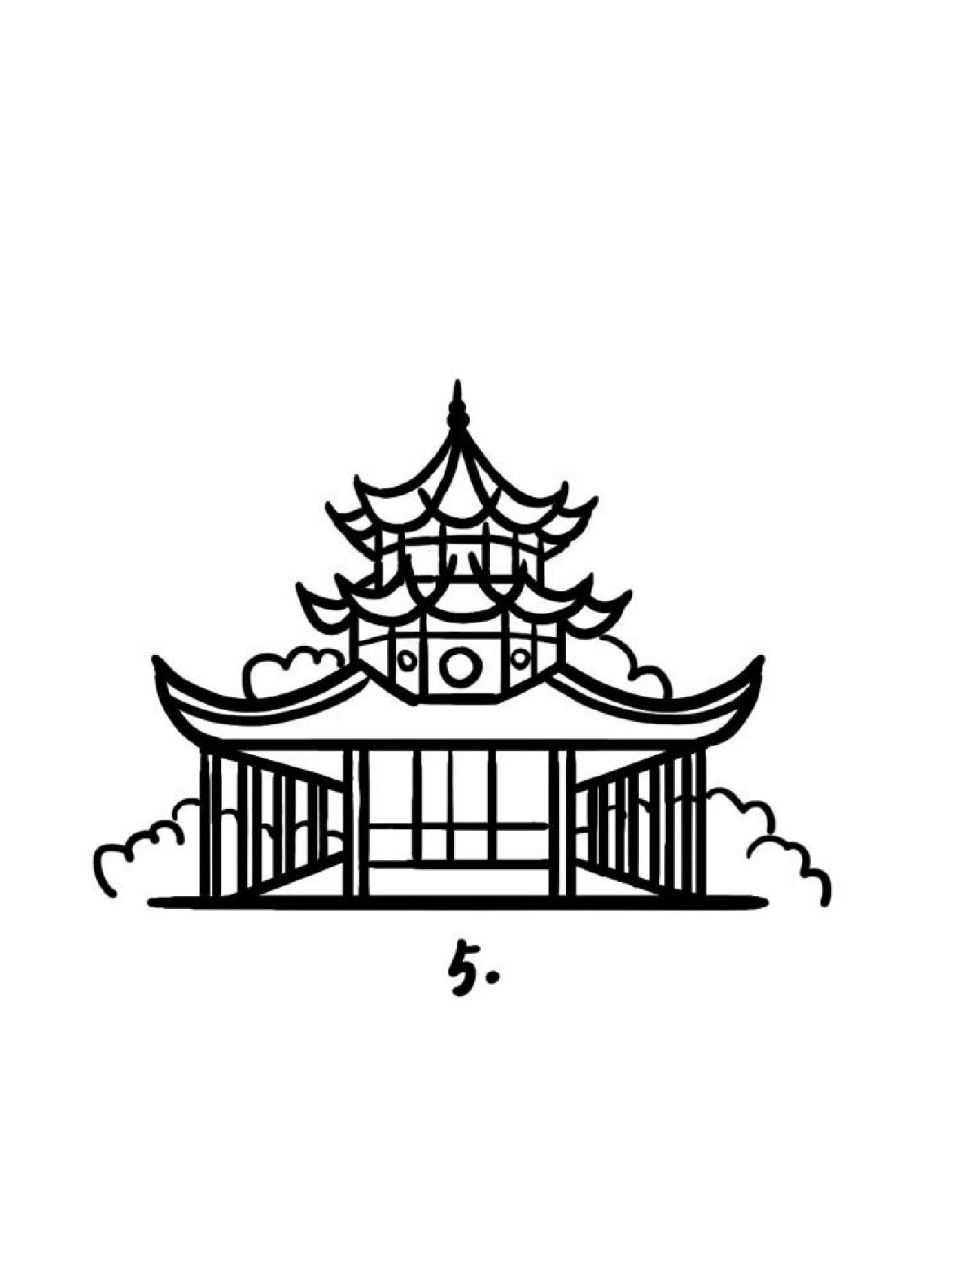 地标建筑简笔画教程53 文昌阁,位于贵阳城区东隅,据万历《贵州通志》